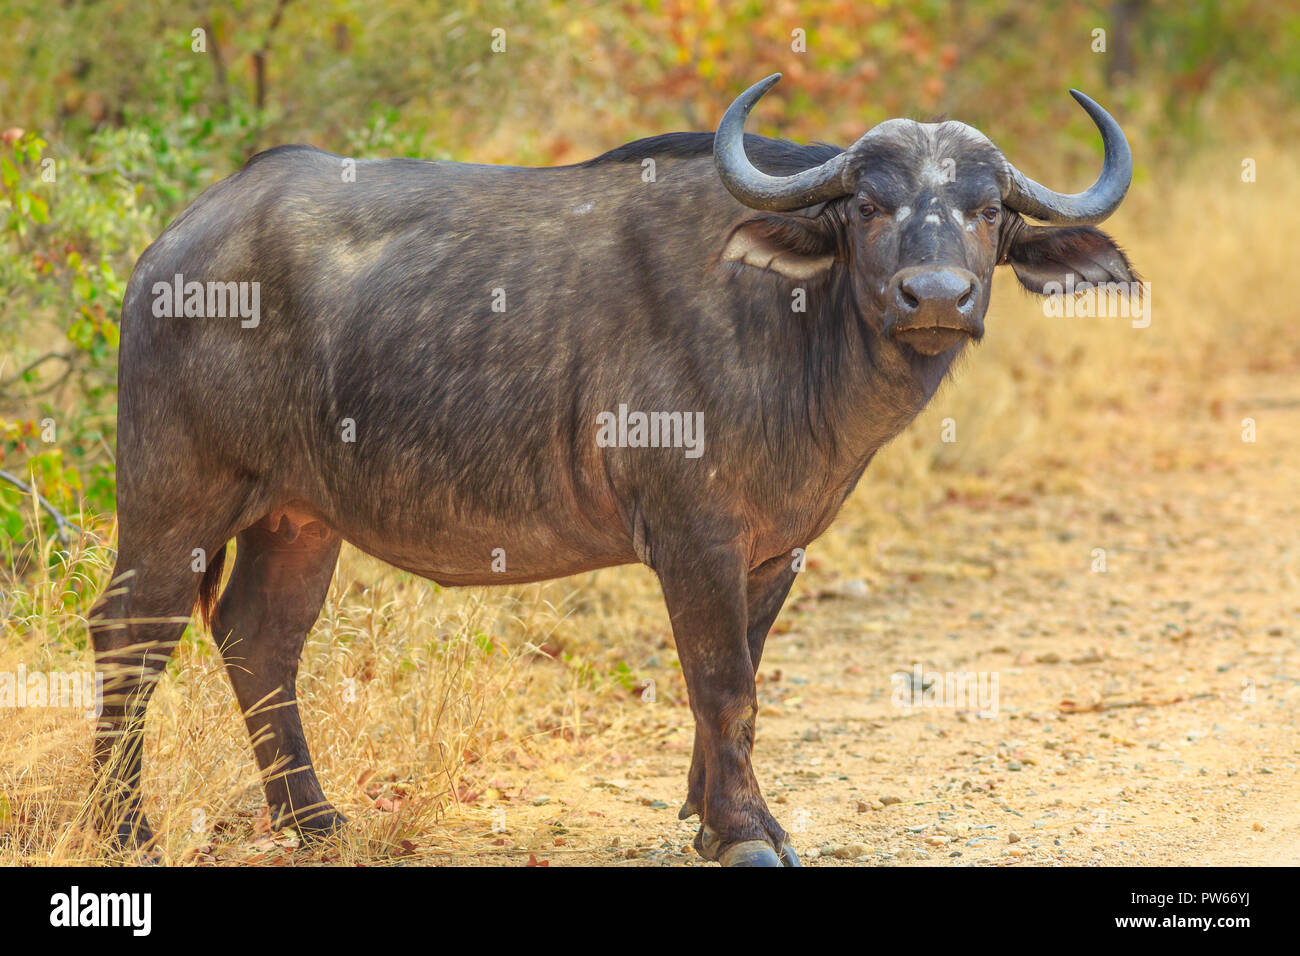 Afrikanische Büffel, Syncerus caffer, im Grünland Natur stehend, trockenen Jahreszeit. Krüger Nationalpark in Südafrika. Der Büffel ist eine große afrikanische Rinder Teil der beliebten Big Five. Stockfoto